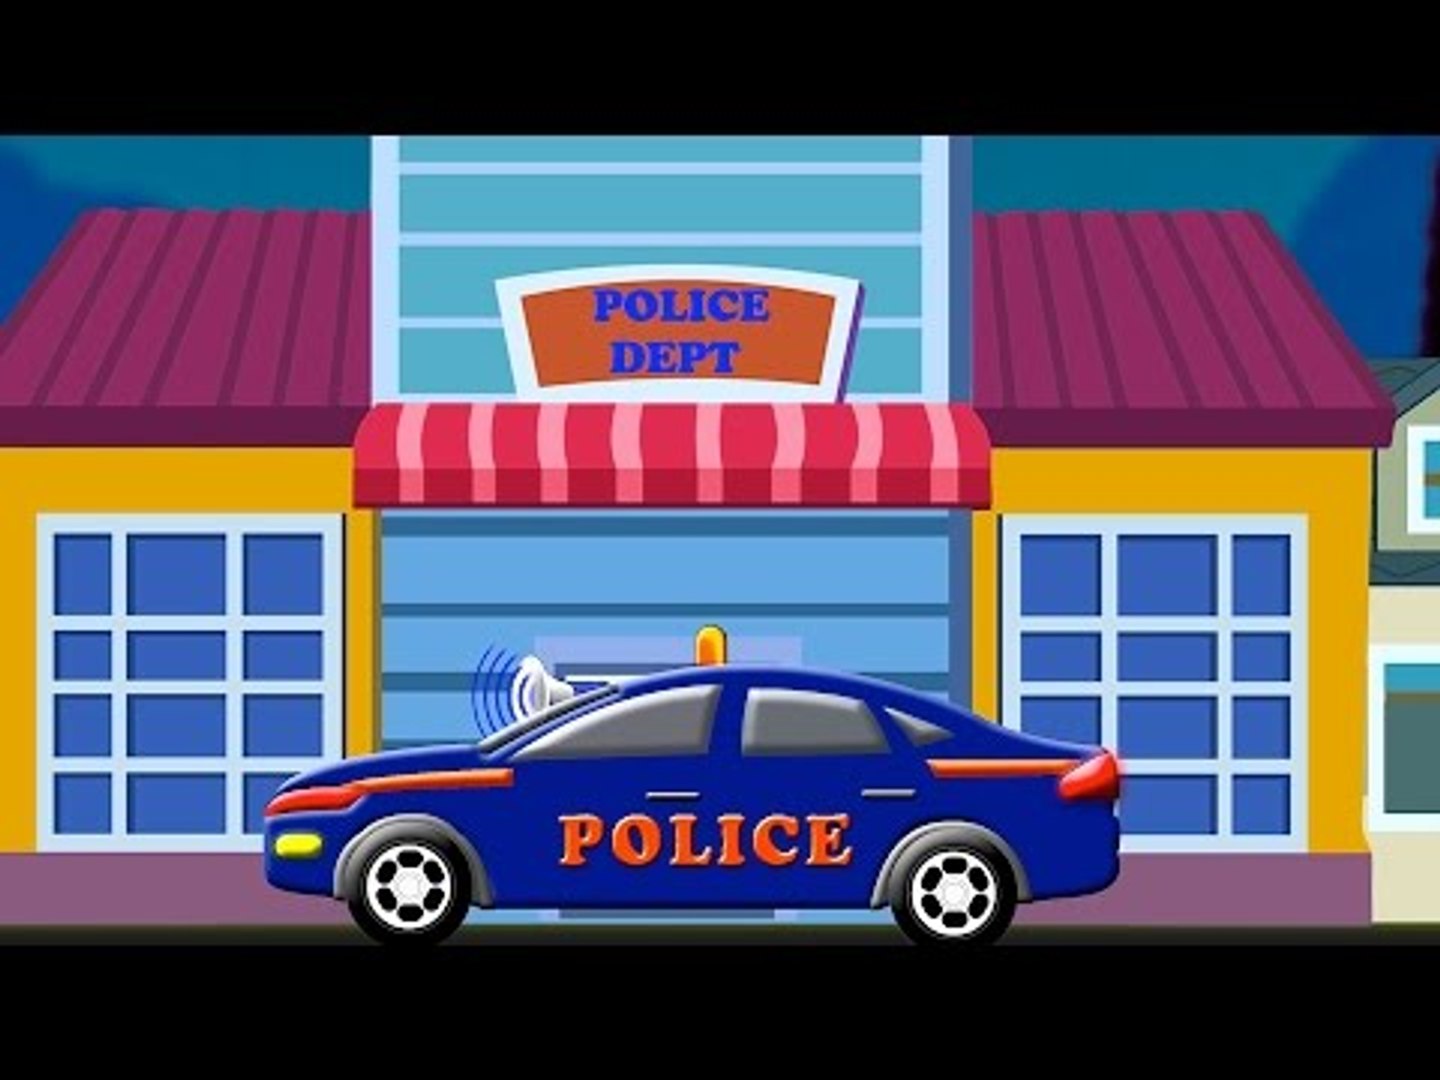 Carro de polícia criança máquina. Desenho da policia. Carros